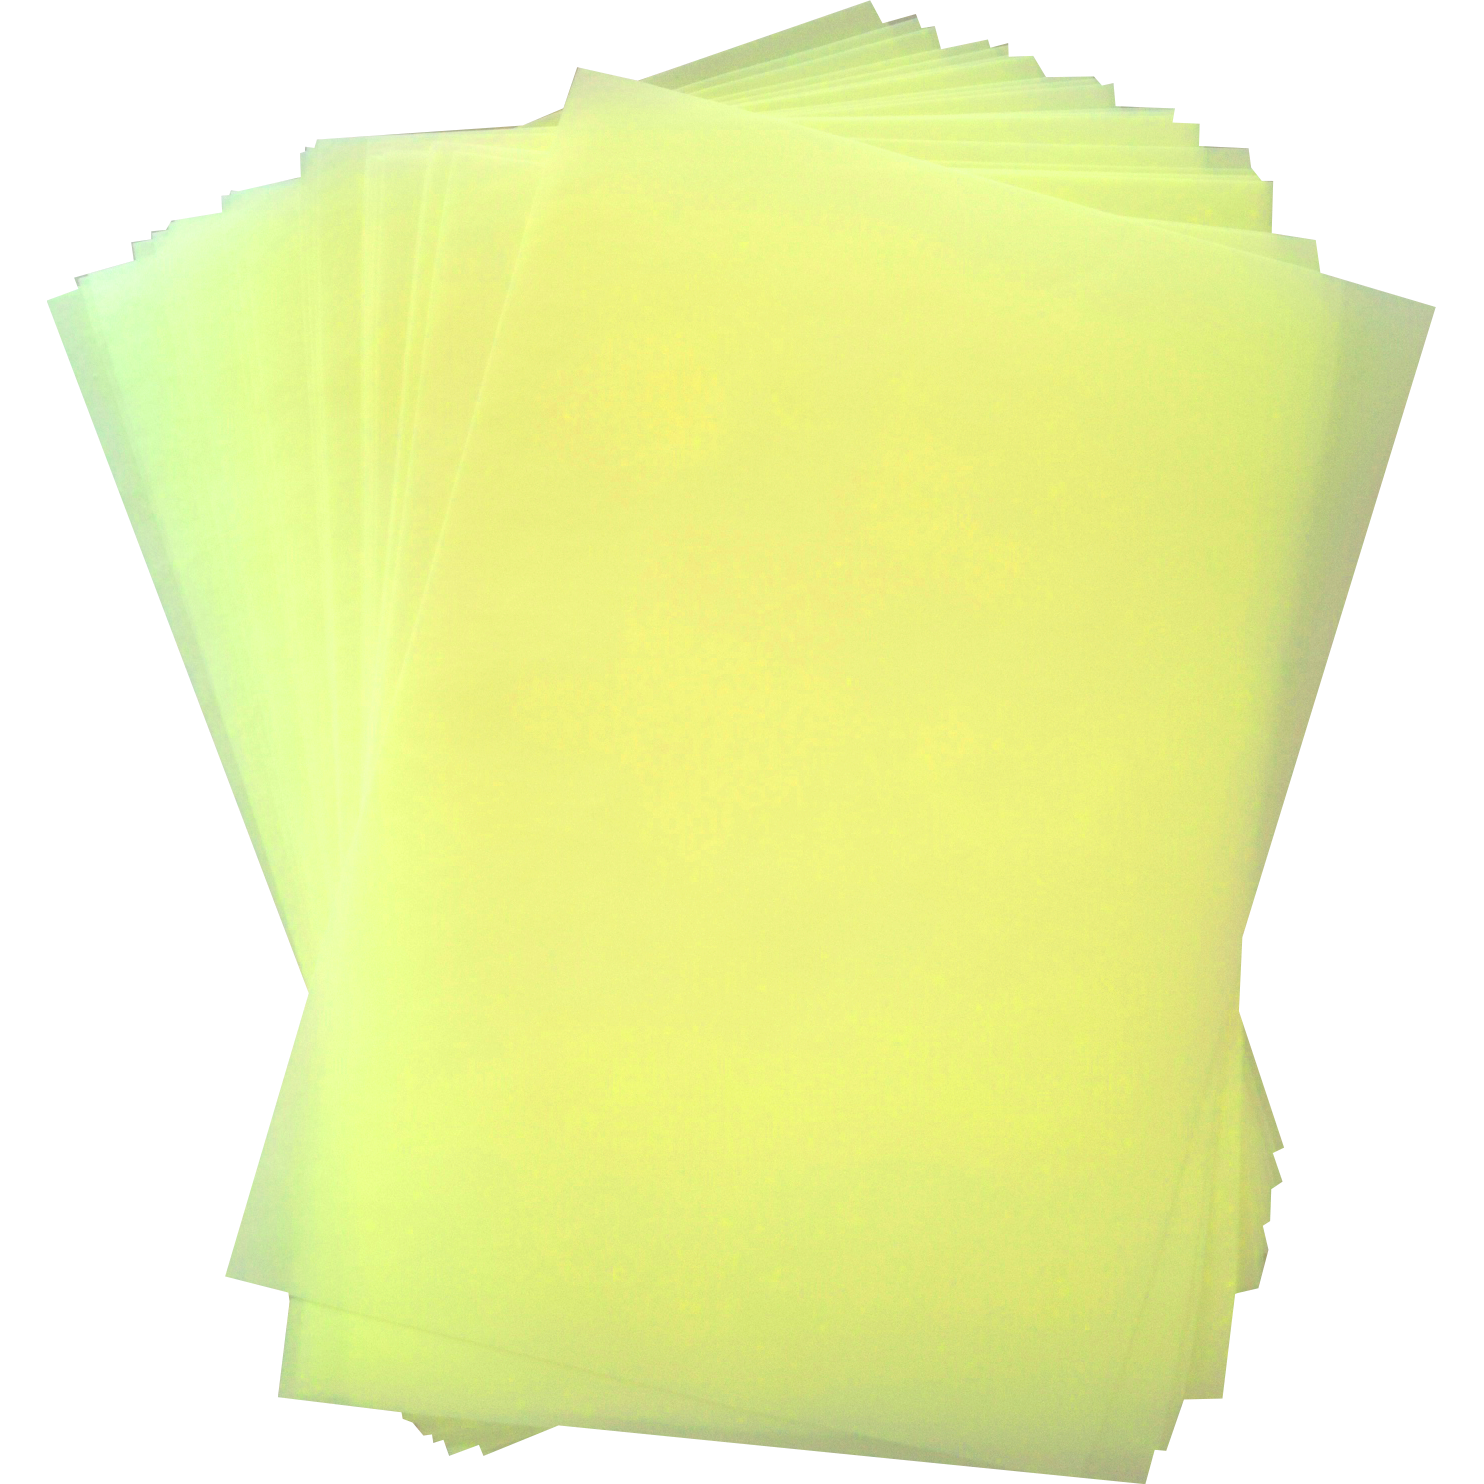 Jedlý papír žlutý a4 25ks Apolo77